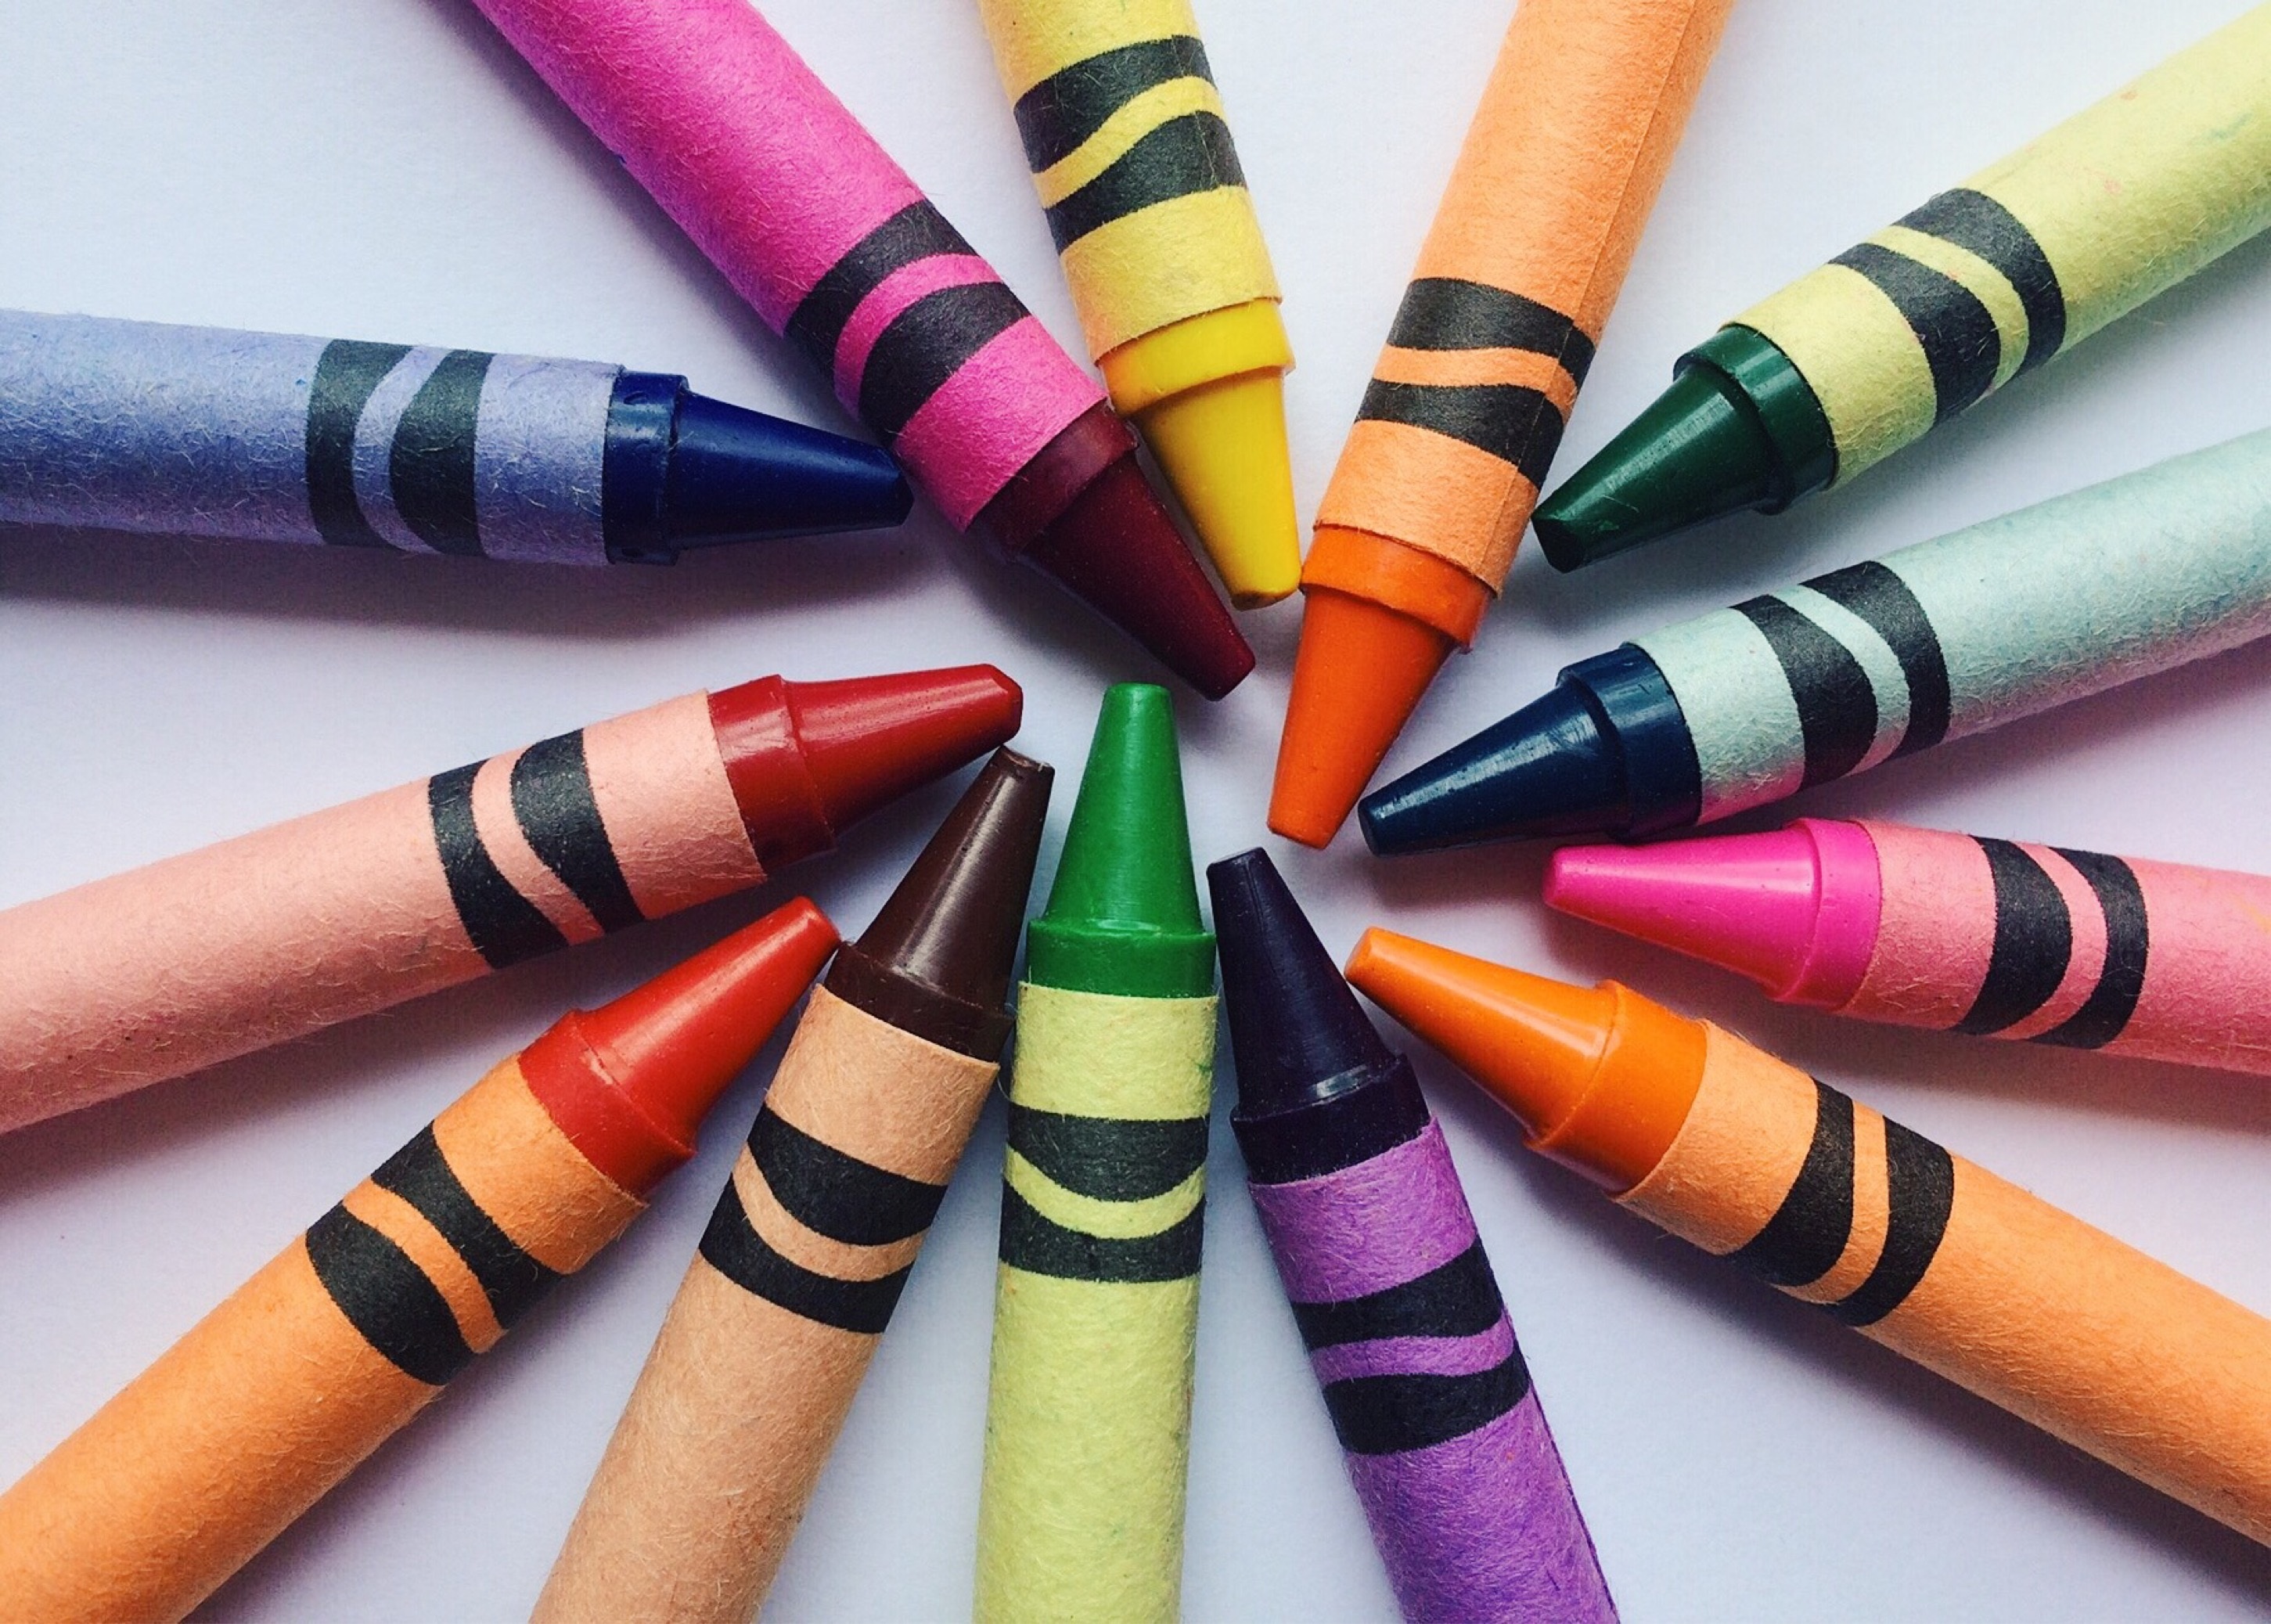 motley, miscellanea, miscellaneous, multicolored, colored pencils, colour pencils, wax pencils